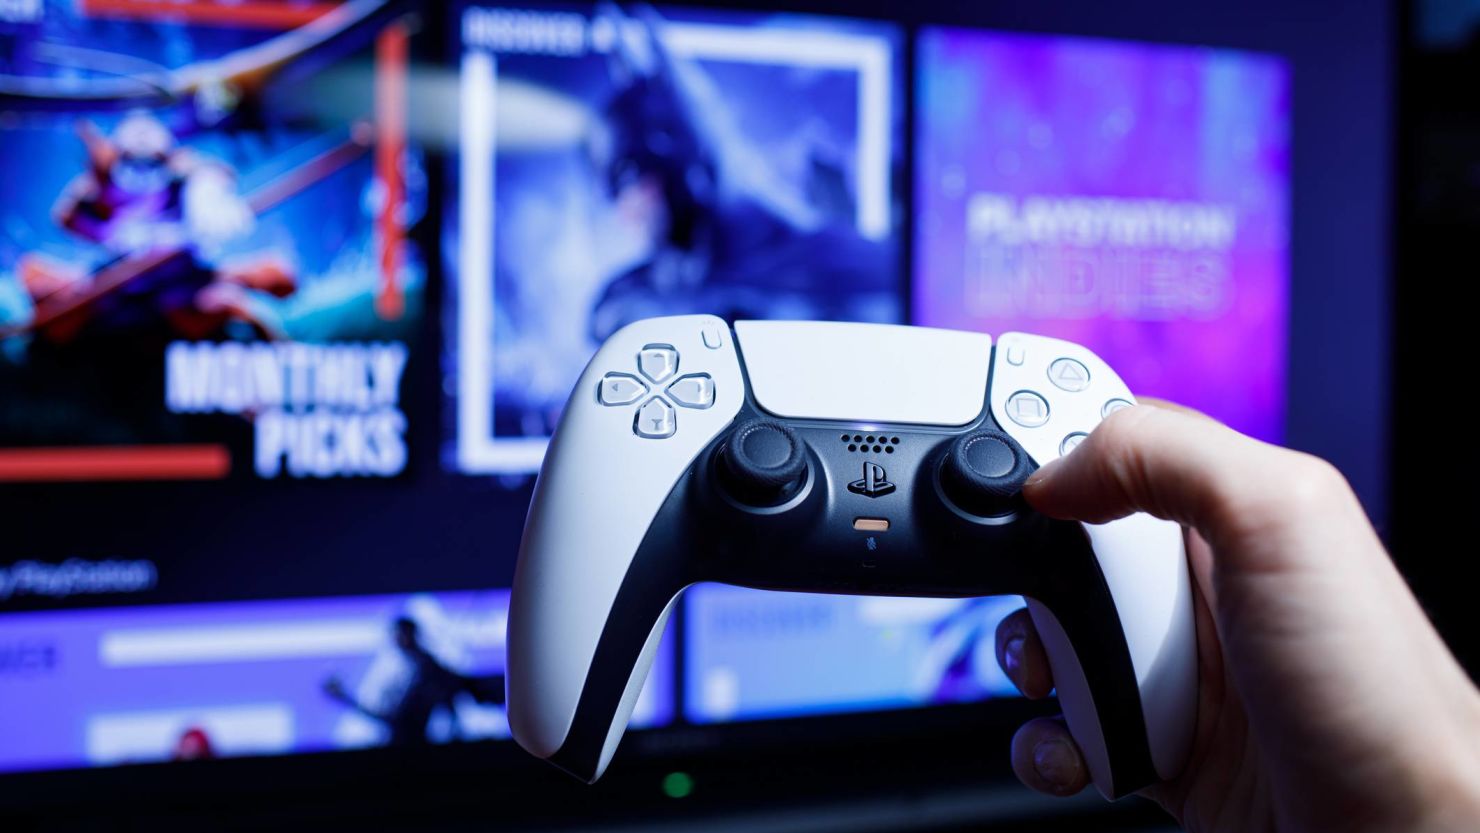 25 Best Xbox online multiplayer games